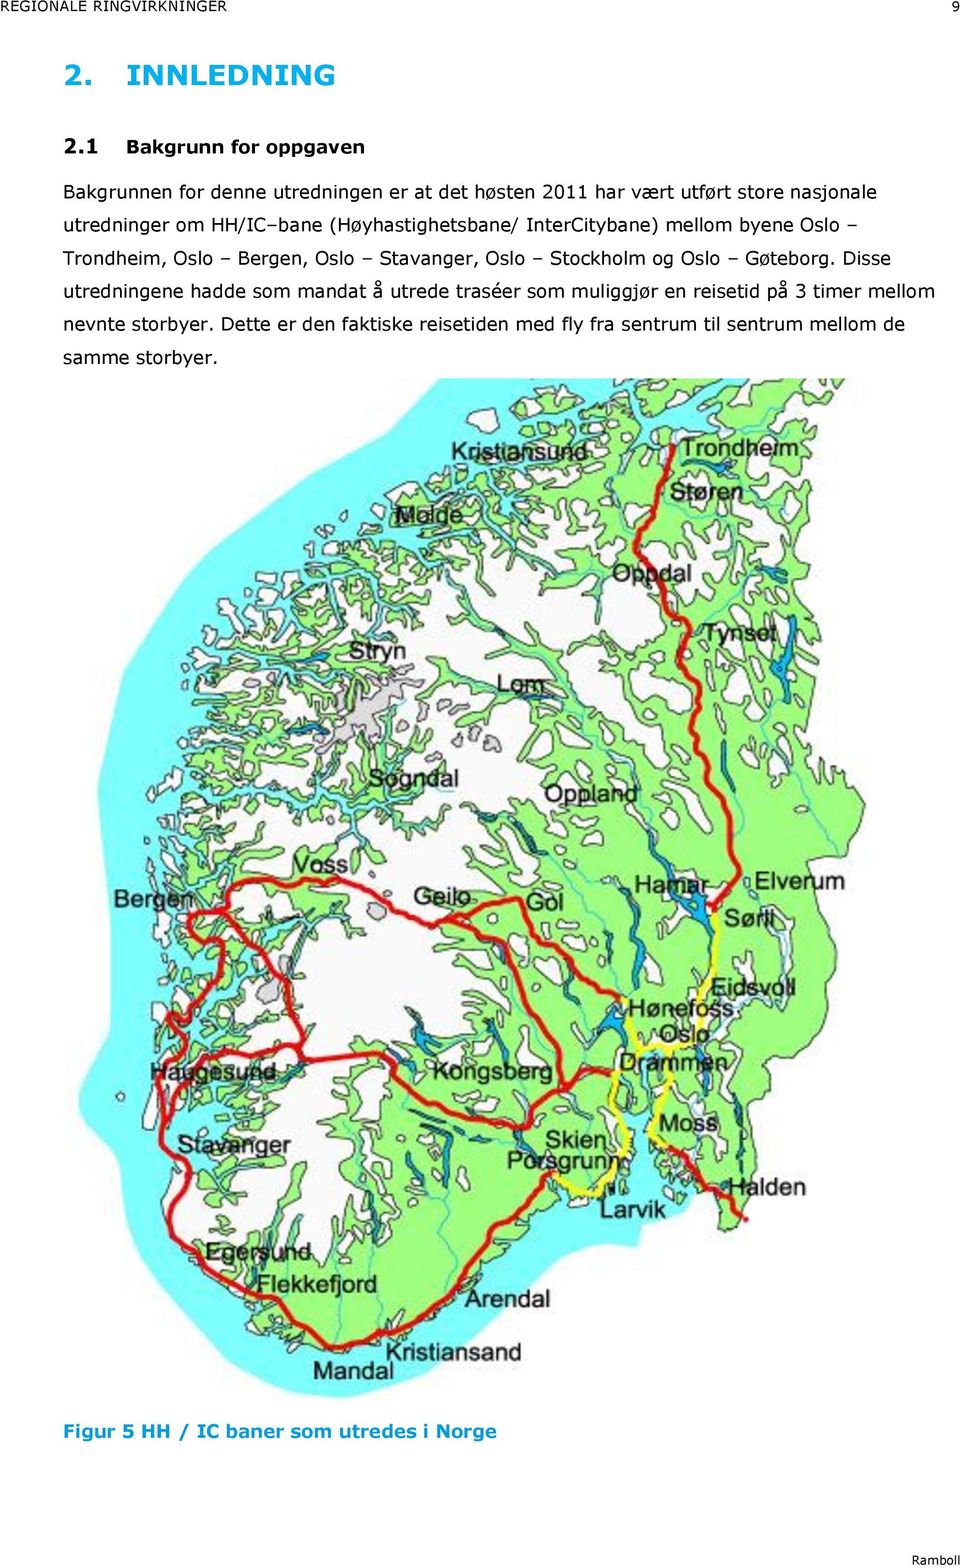 (Høyhastighetsbane/ InterCitybane) mellom byene Oslo Trondheim, Oslo Bergen, Oslo Stavanger, Oslo Stockholm og Oslo Gøteborg.